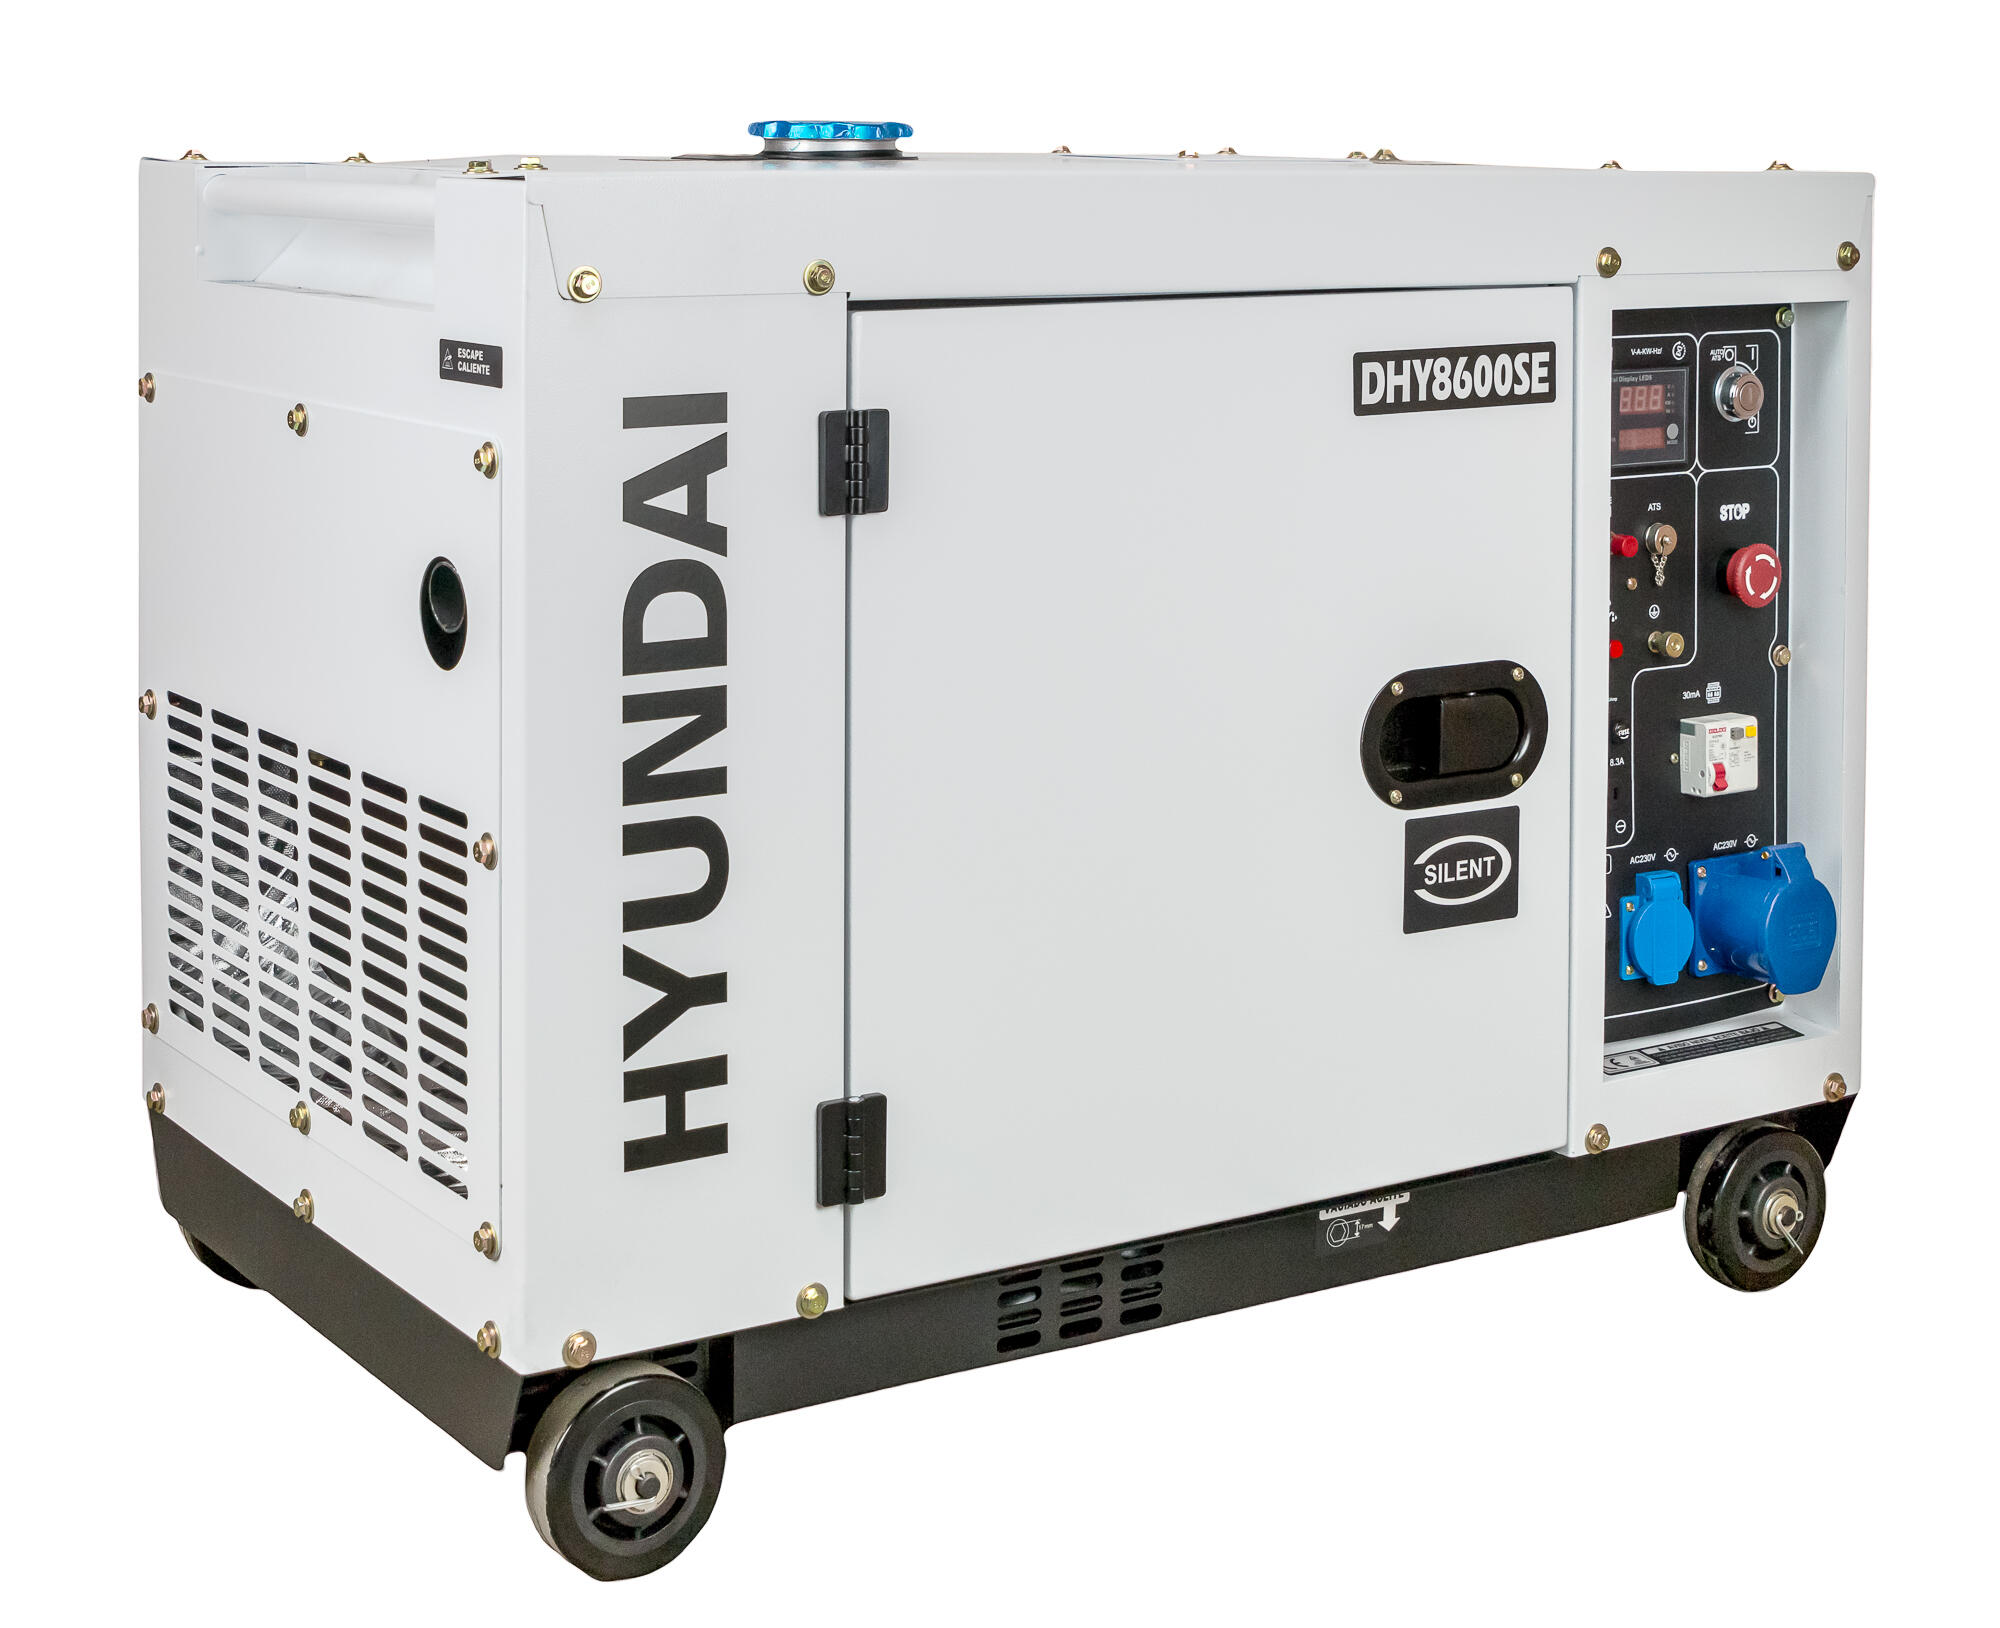 Generador hyundai dhy8600se diésel monofásico de 6000w